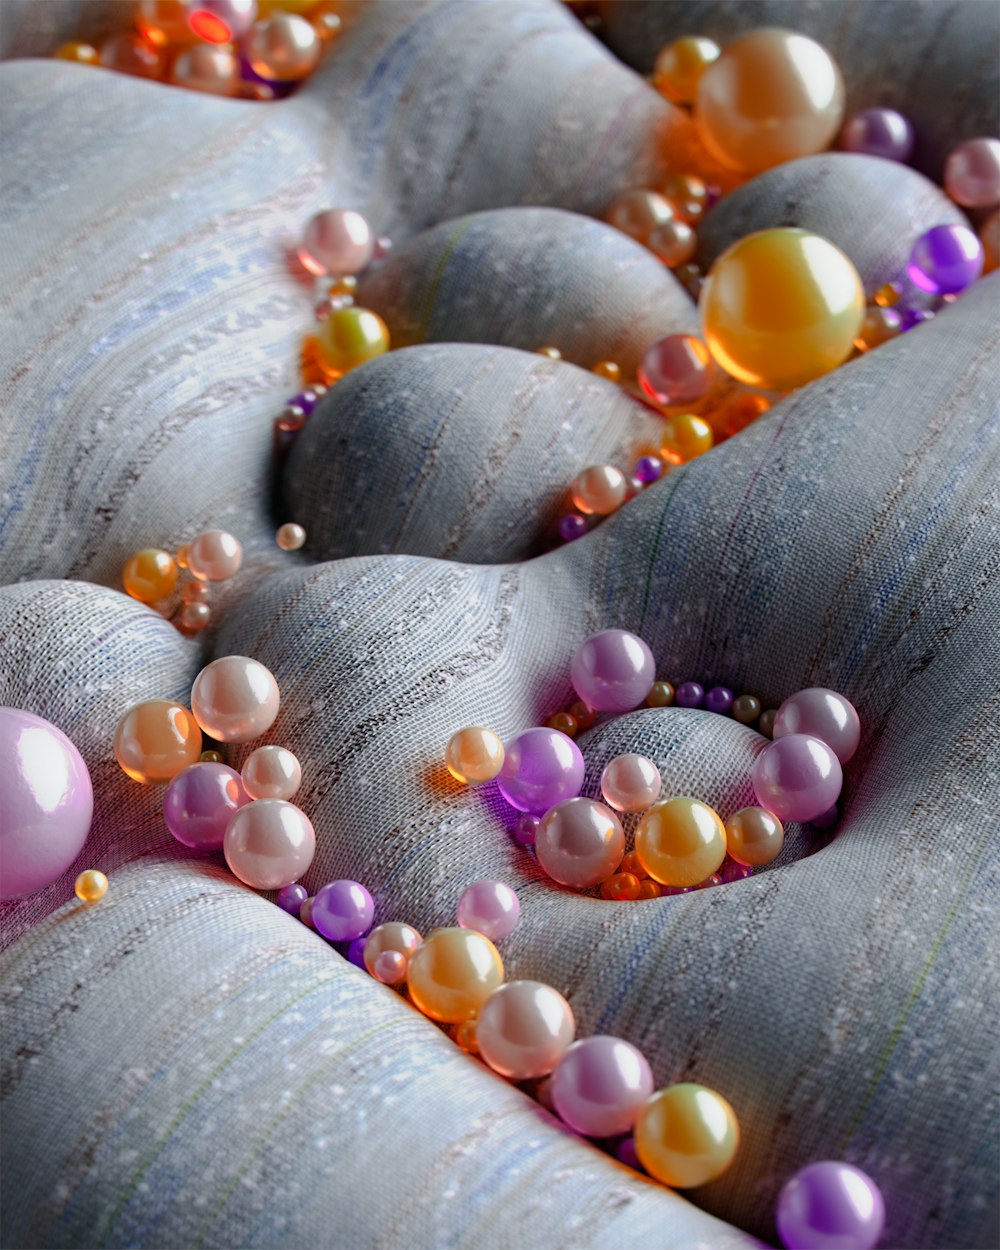 un tas de perles qui reposent sur du tissu